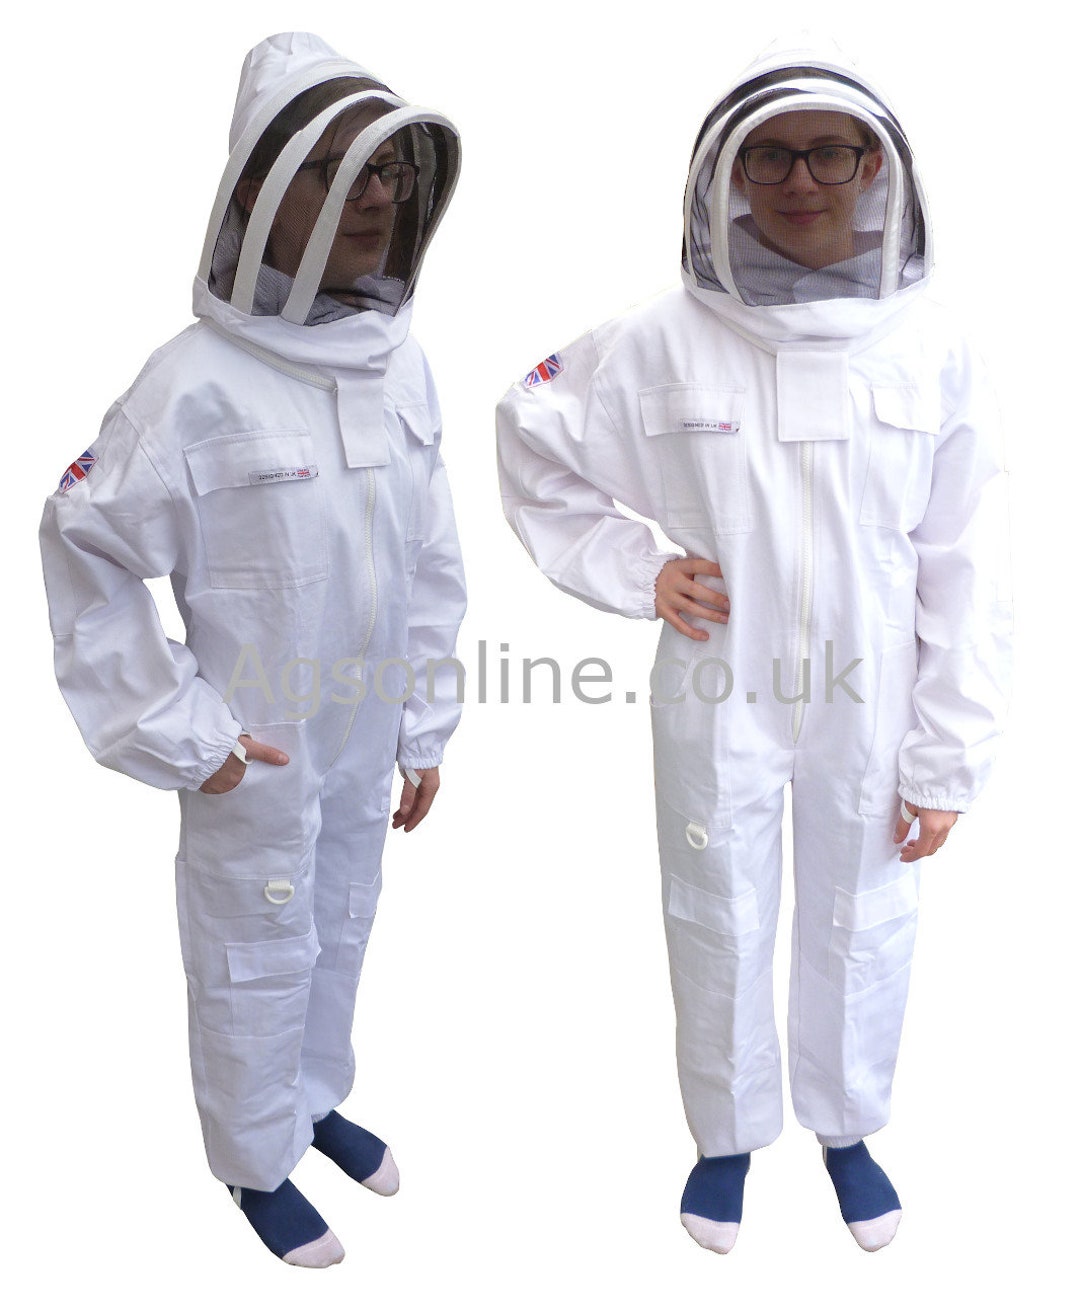 Traje de abeja con capucha redonda, de algodón grueso y sin picaduras,  traje de apicultor profesional, disfraz de apicultor para adultos, traje de